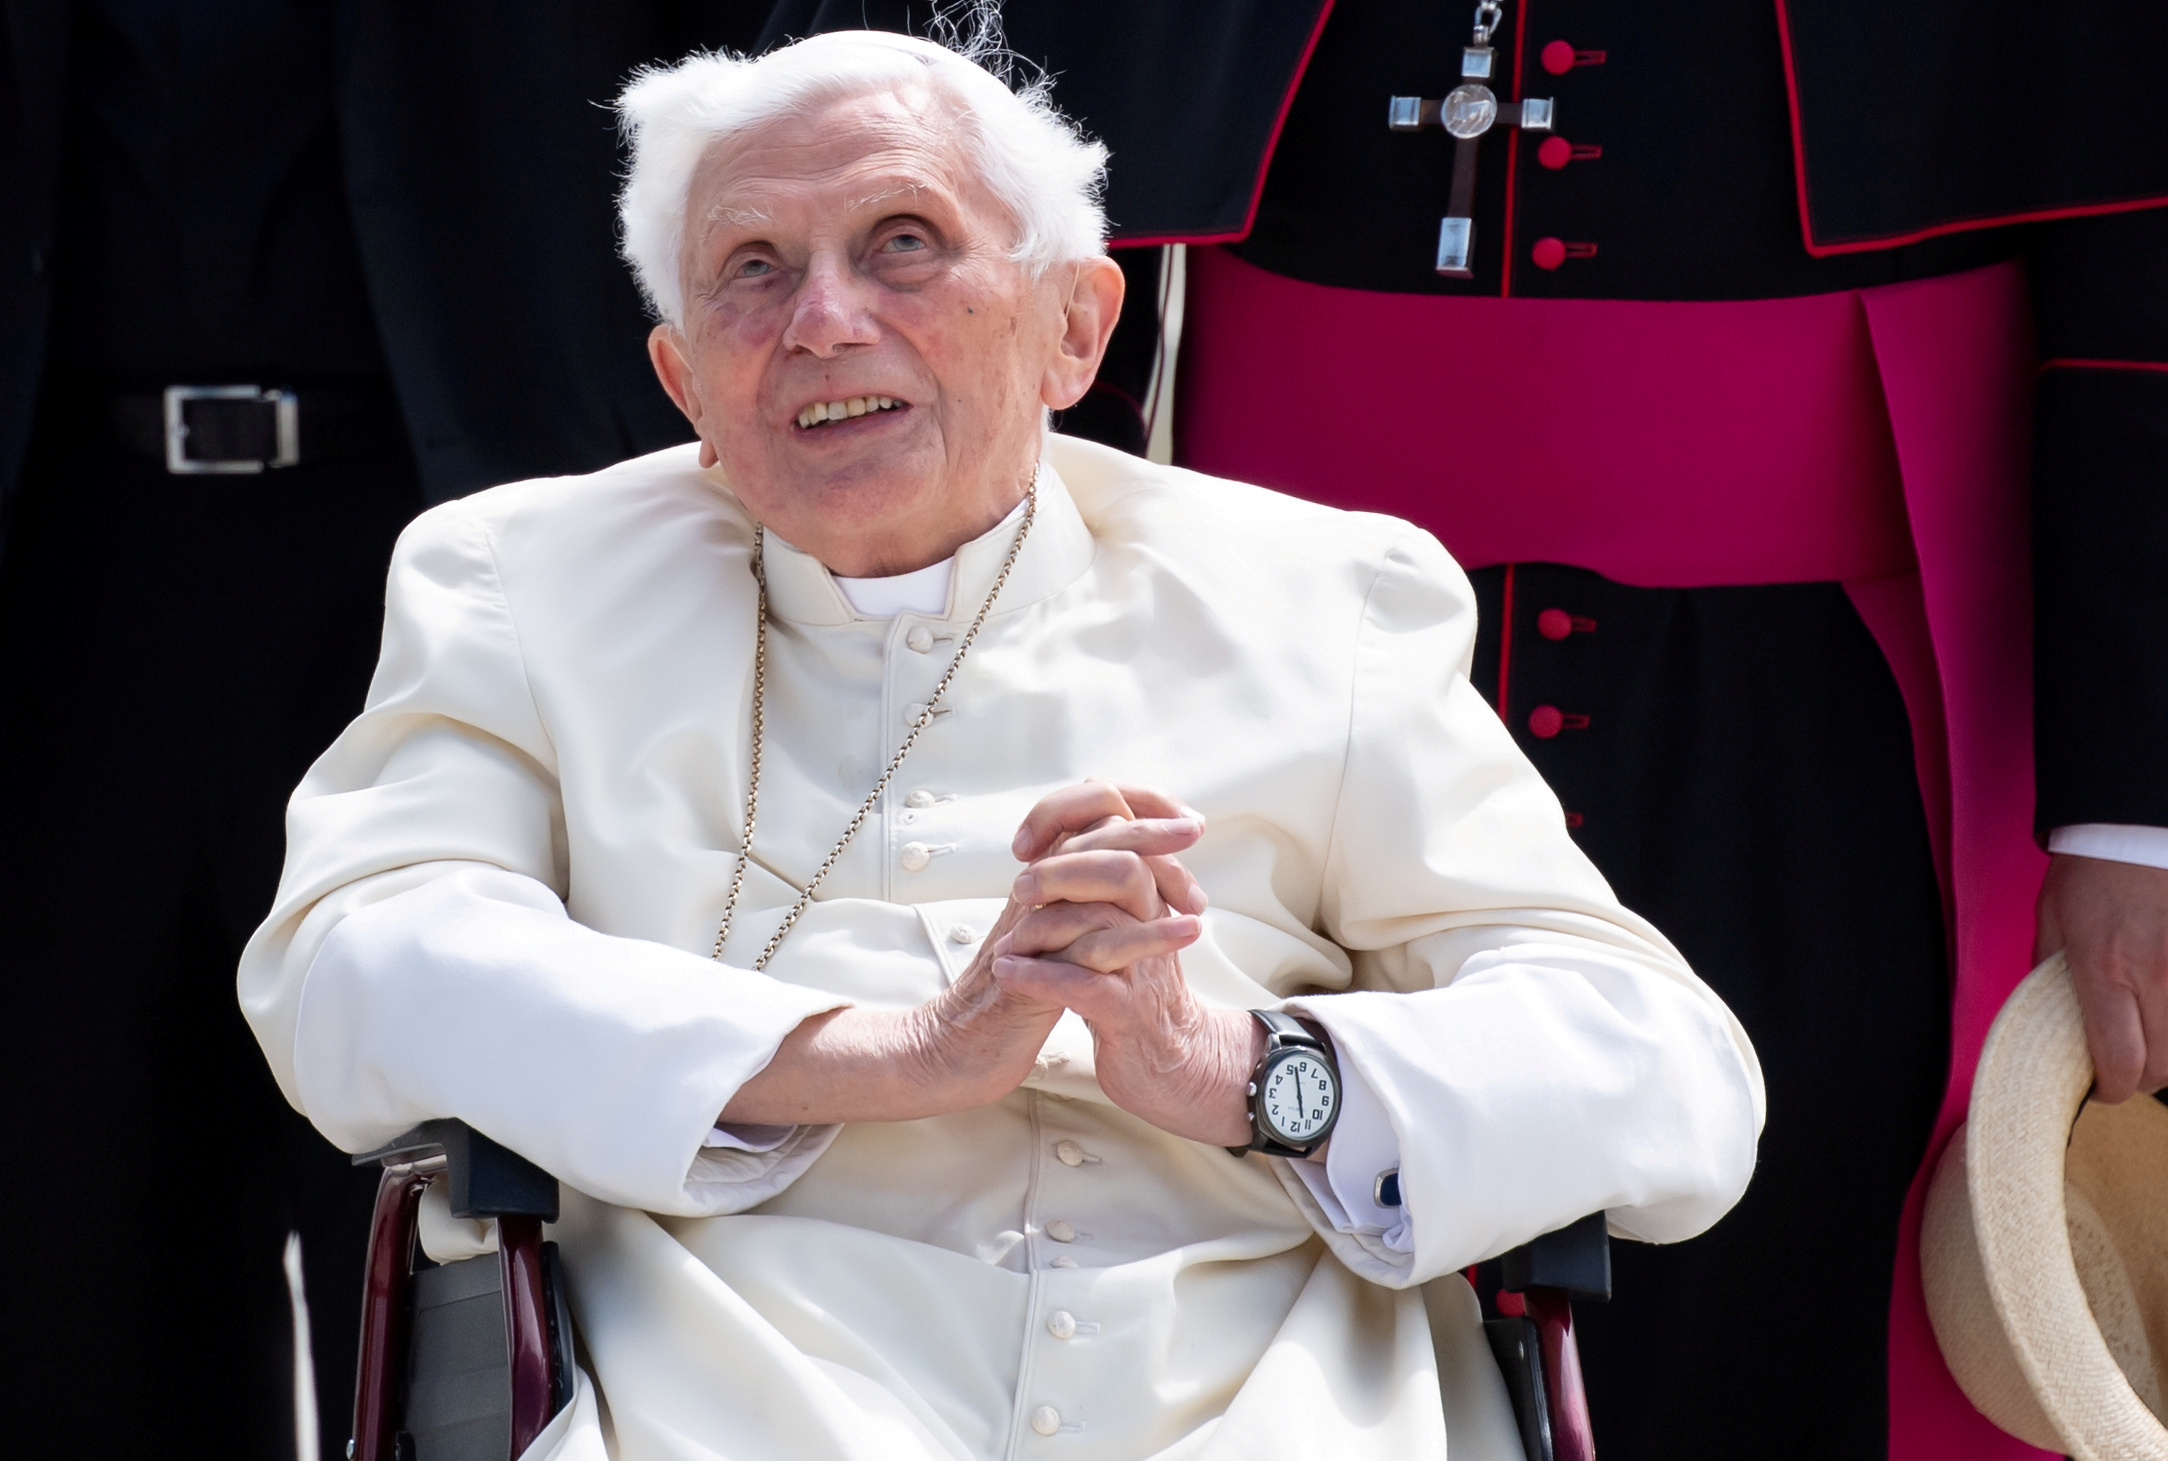 Benedicto XVI, en condiciones de salud “graves”, según medios italianos (Detalles)